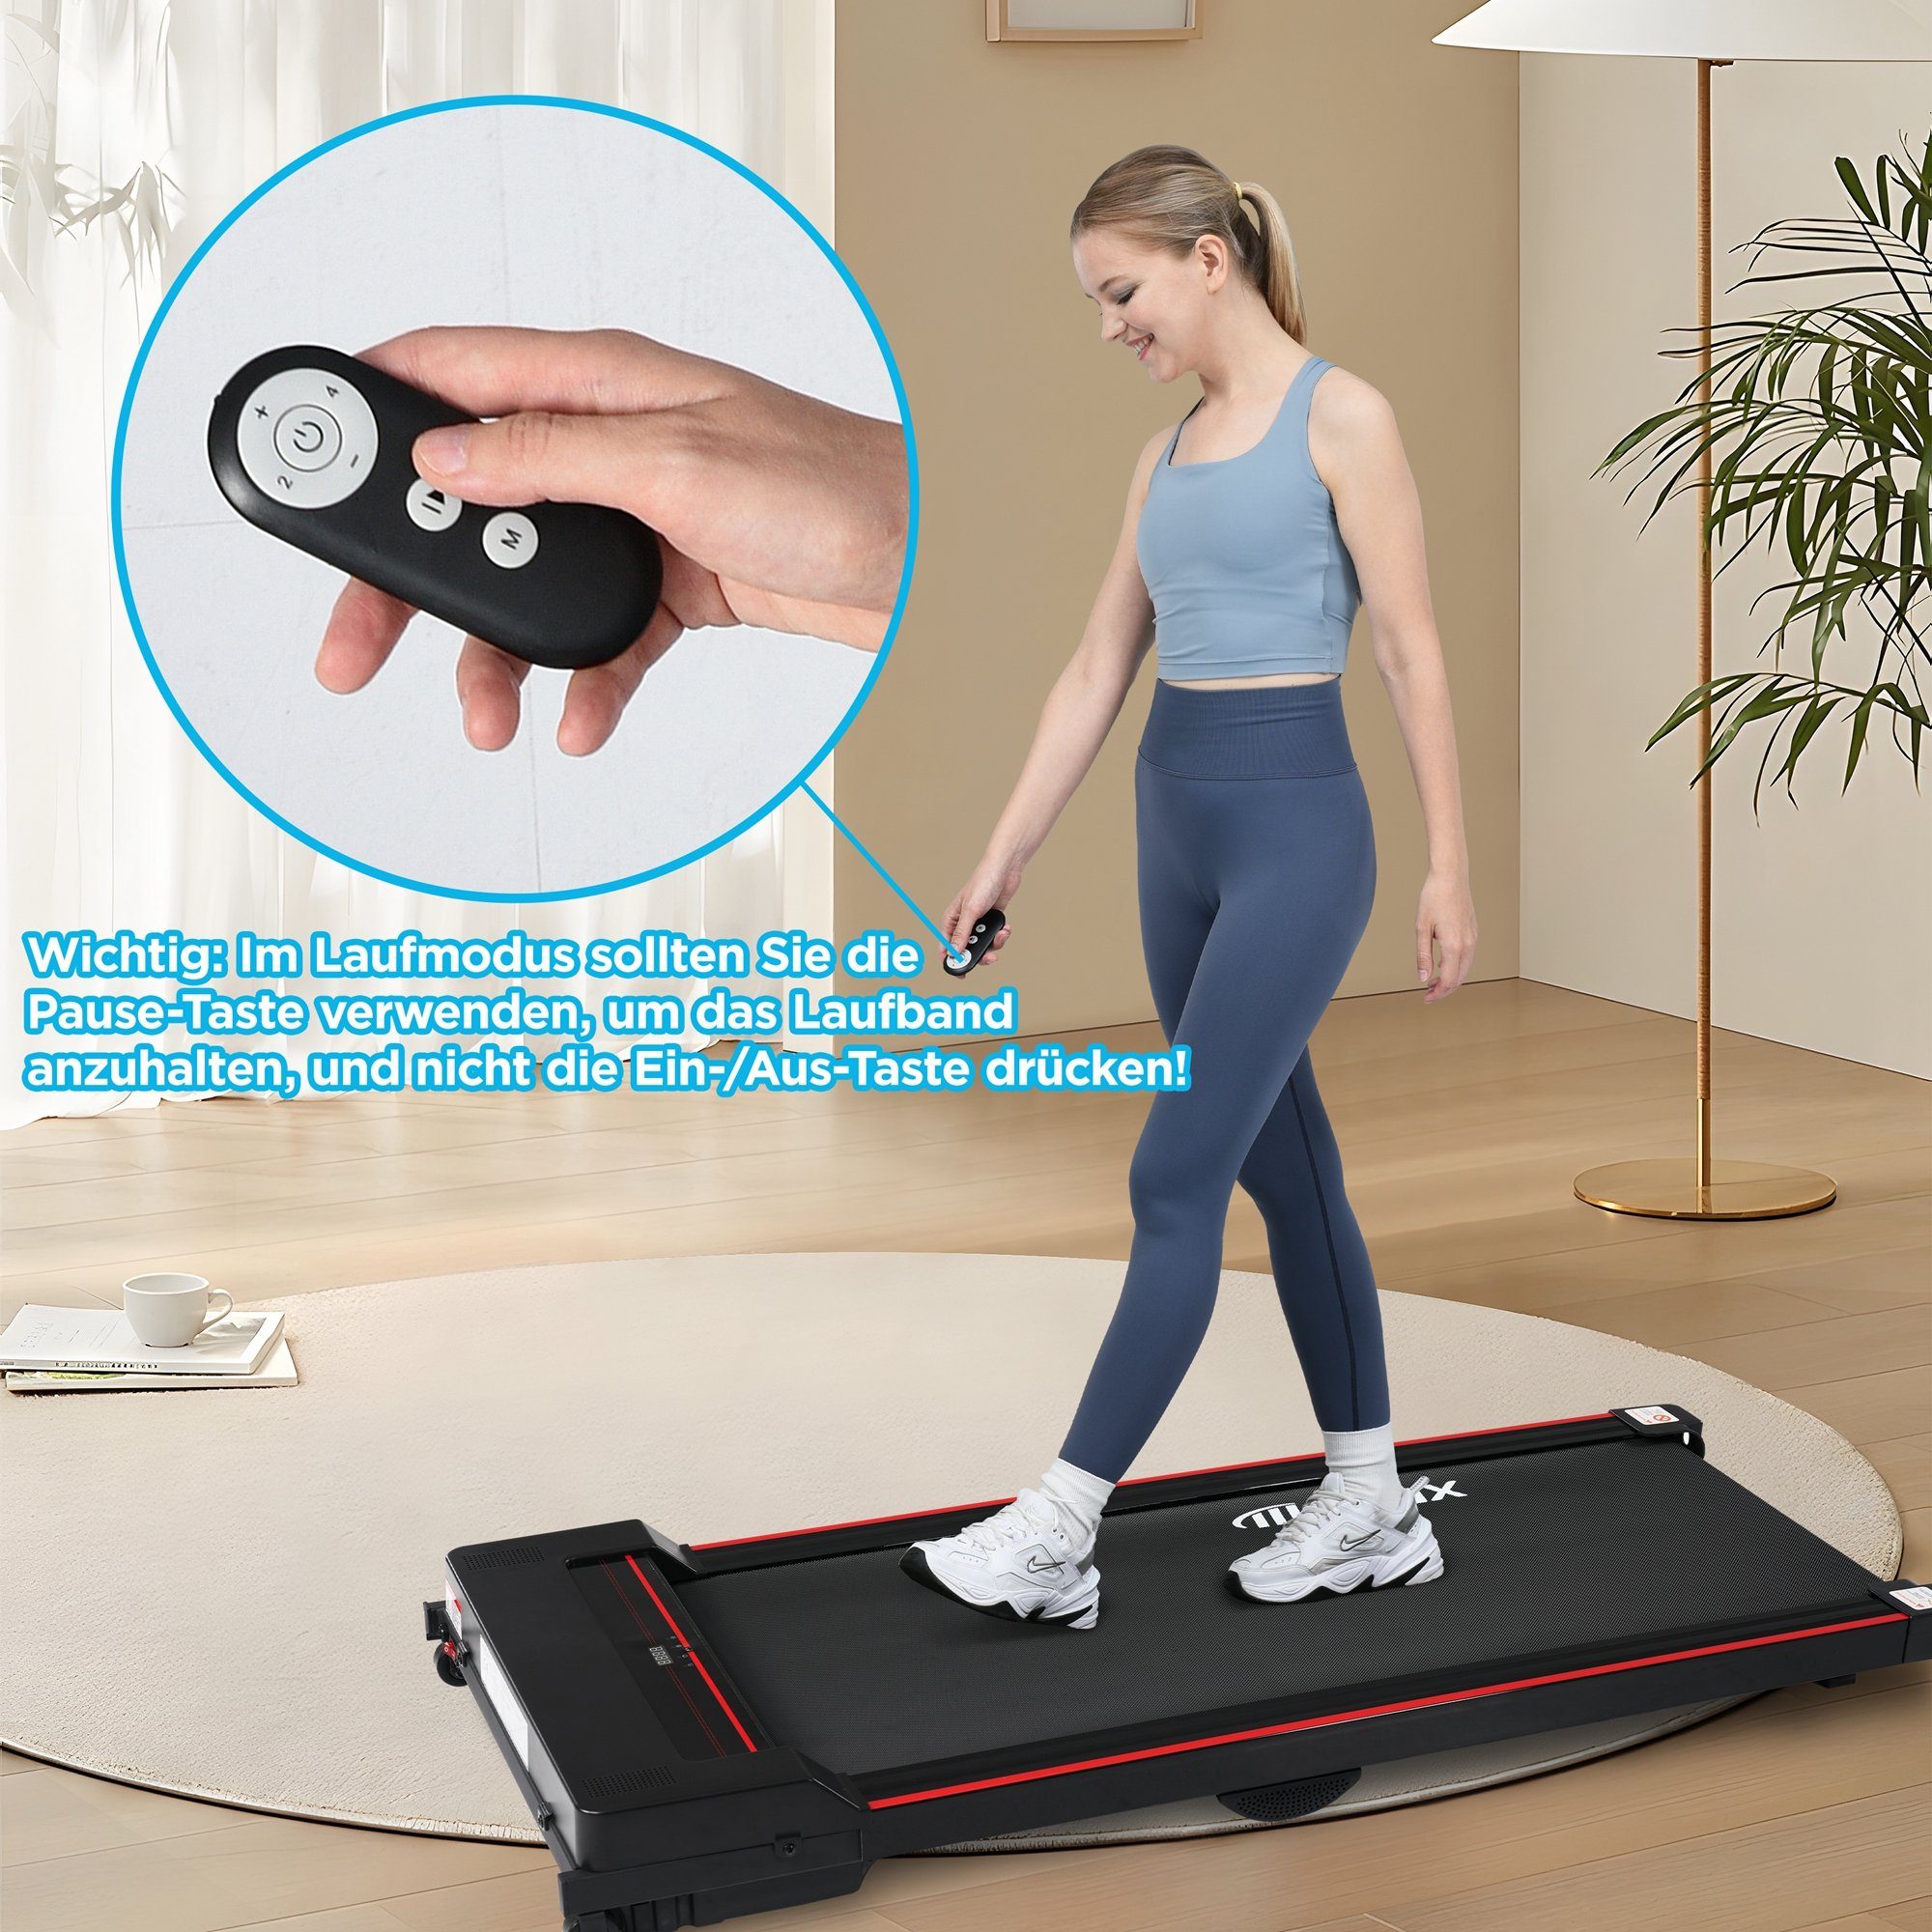 KM/H, Laufband, Jogging Walking Pad Underdesk 1-8 Treadmill, Merax